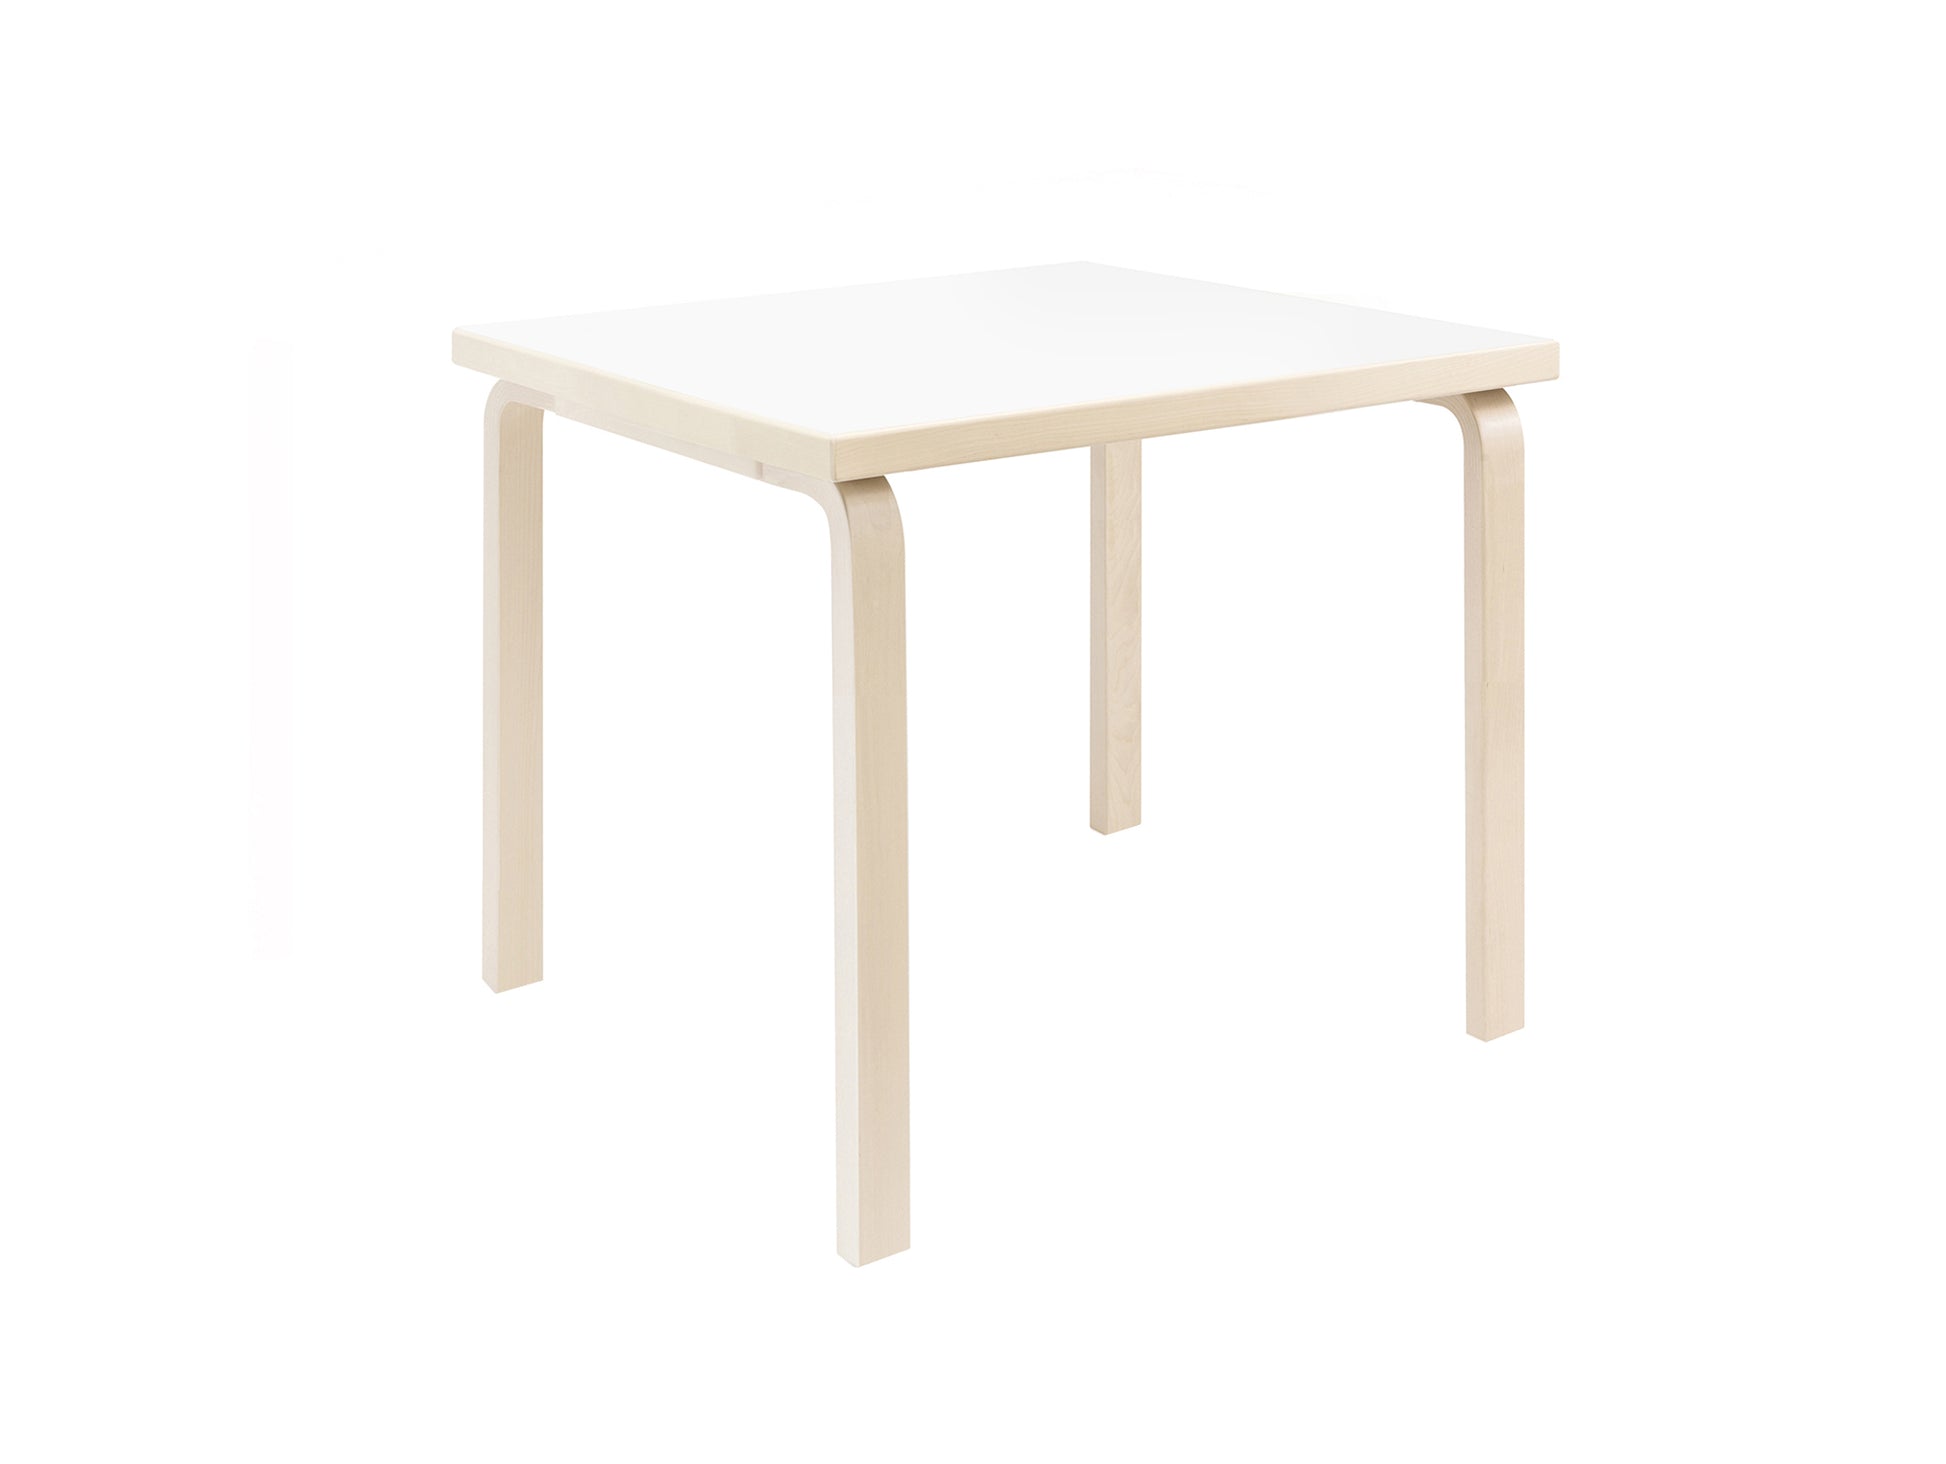 Aalto Table Square by Artek - 81C (75 x 75 cm)